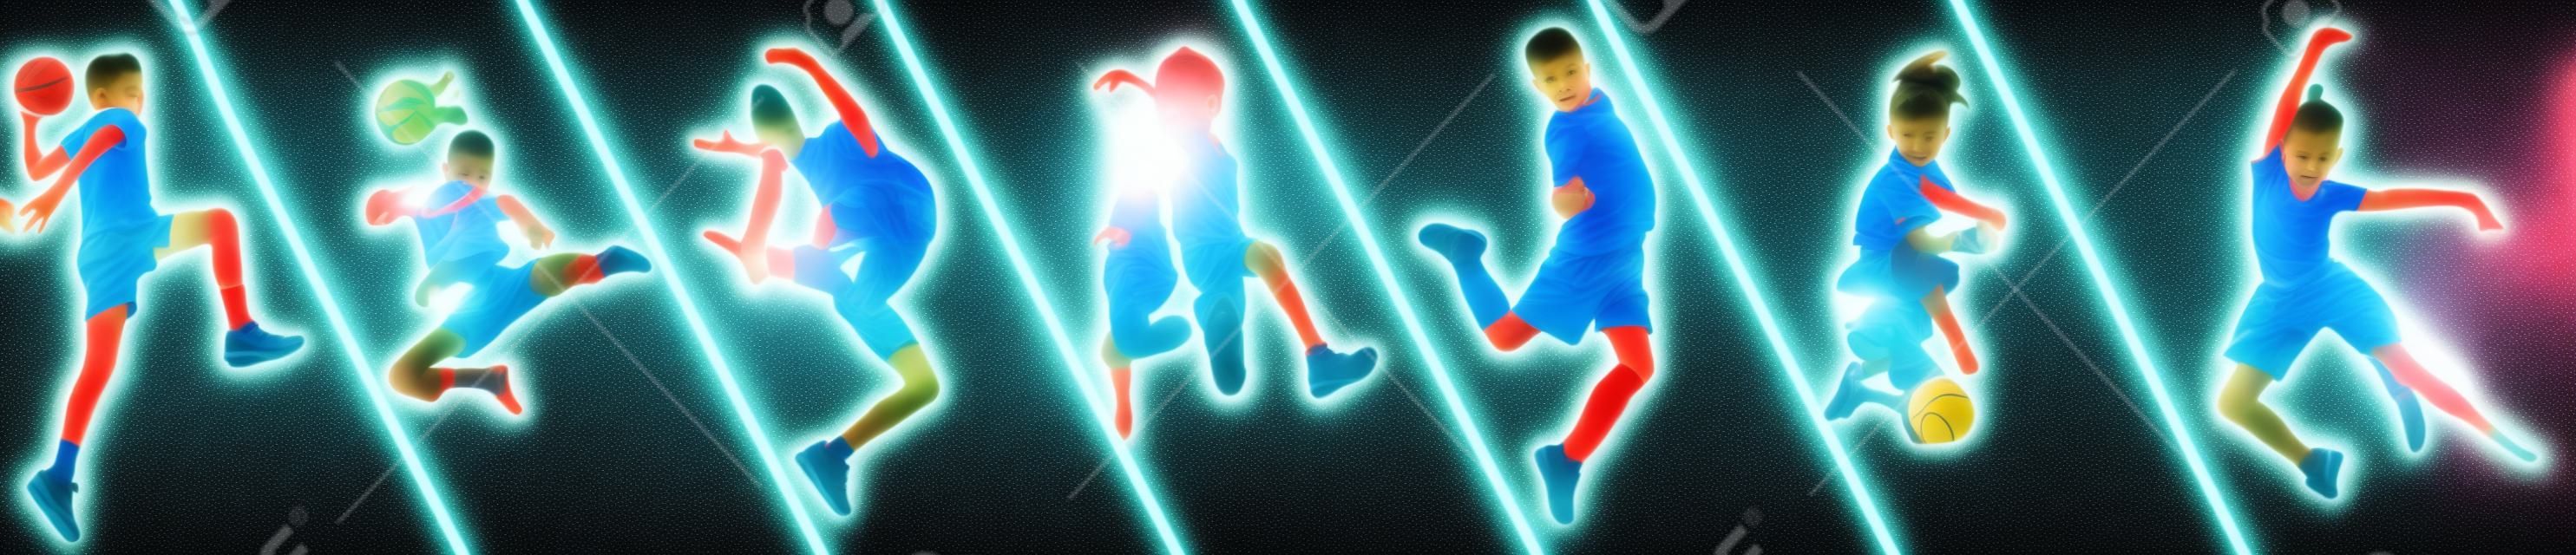 Poster. verschiedene kleine sportler in aktion und bewegung isoliert auf mehrfarbigem hintergrund in neon. Flyer. Sport für Kinder